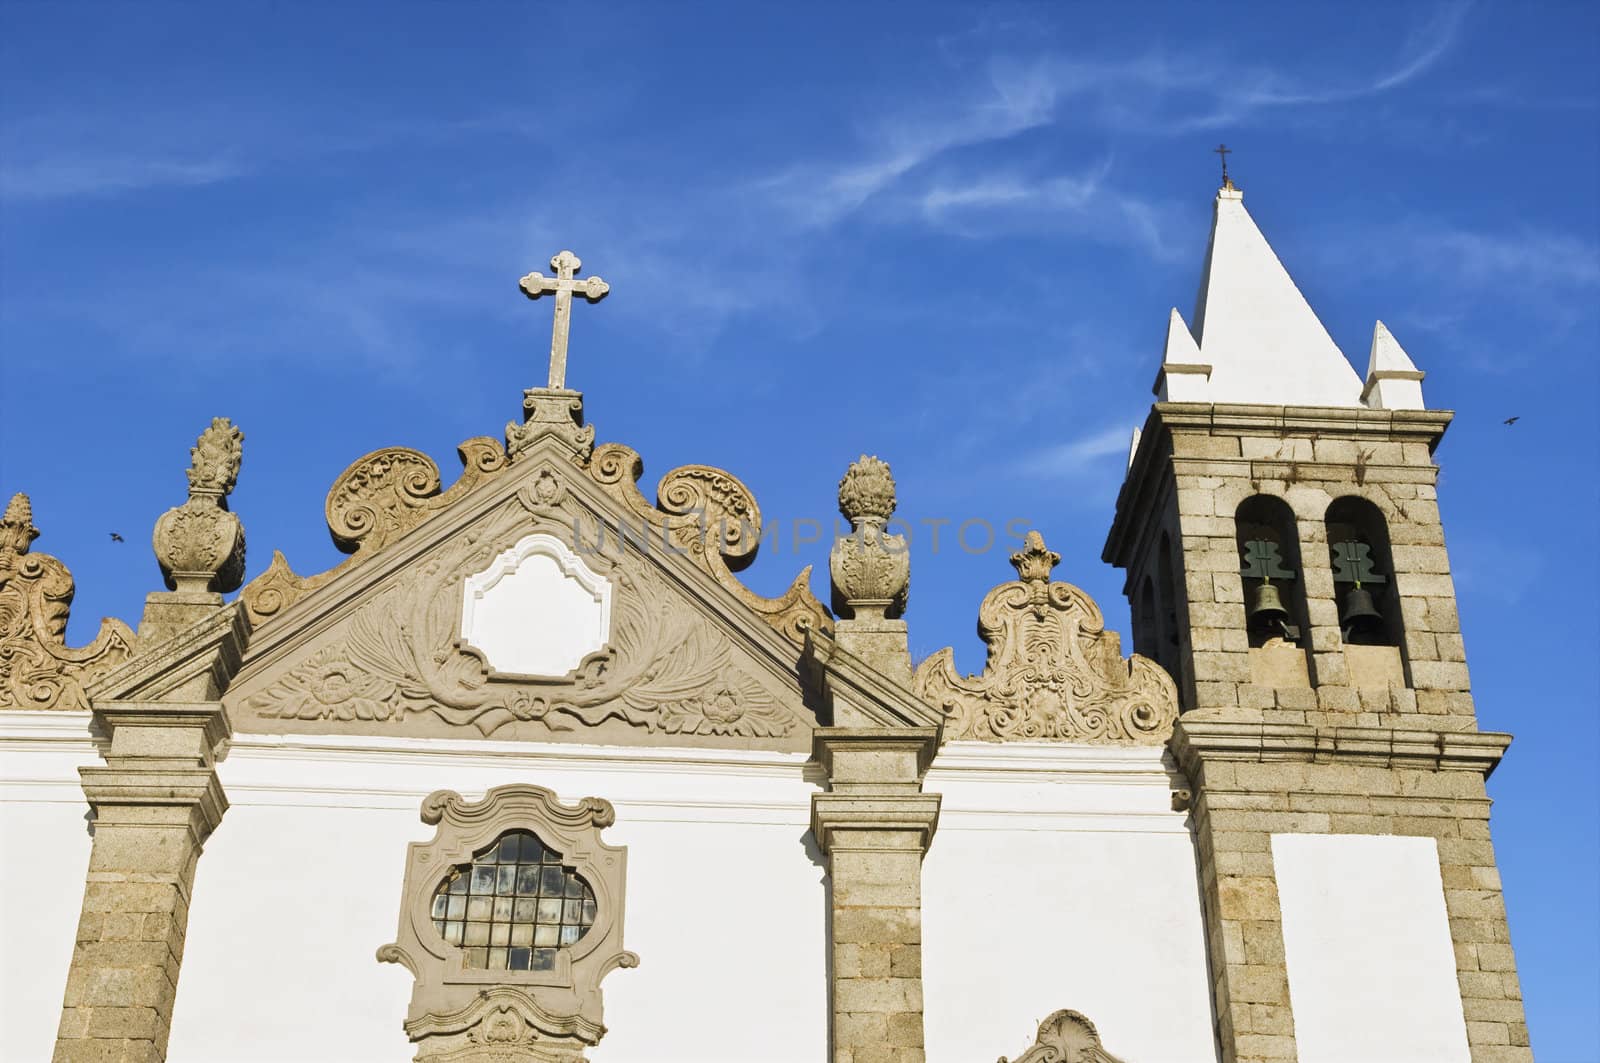 Church of Salvador, Alcacovas, Alentejo, Portugal
